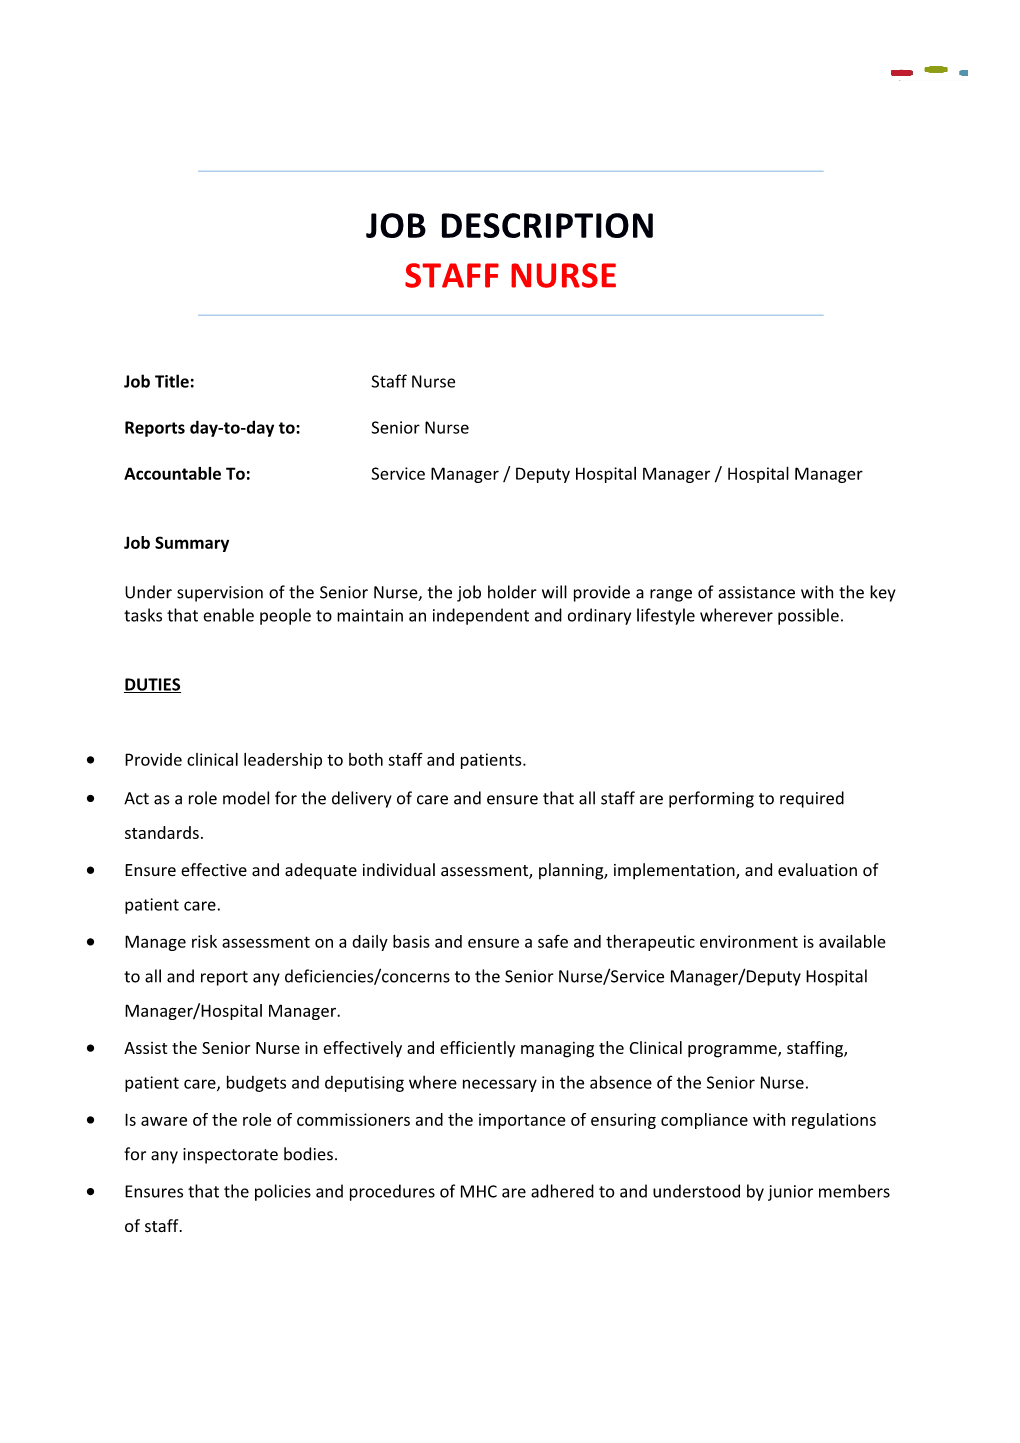 Job Description STAFF NURSE